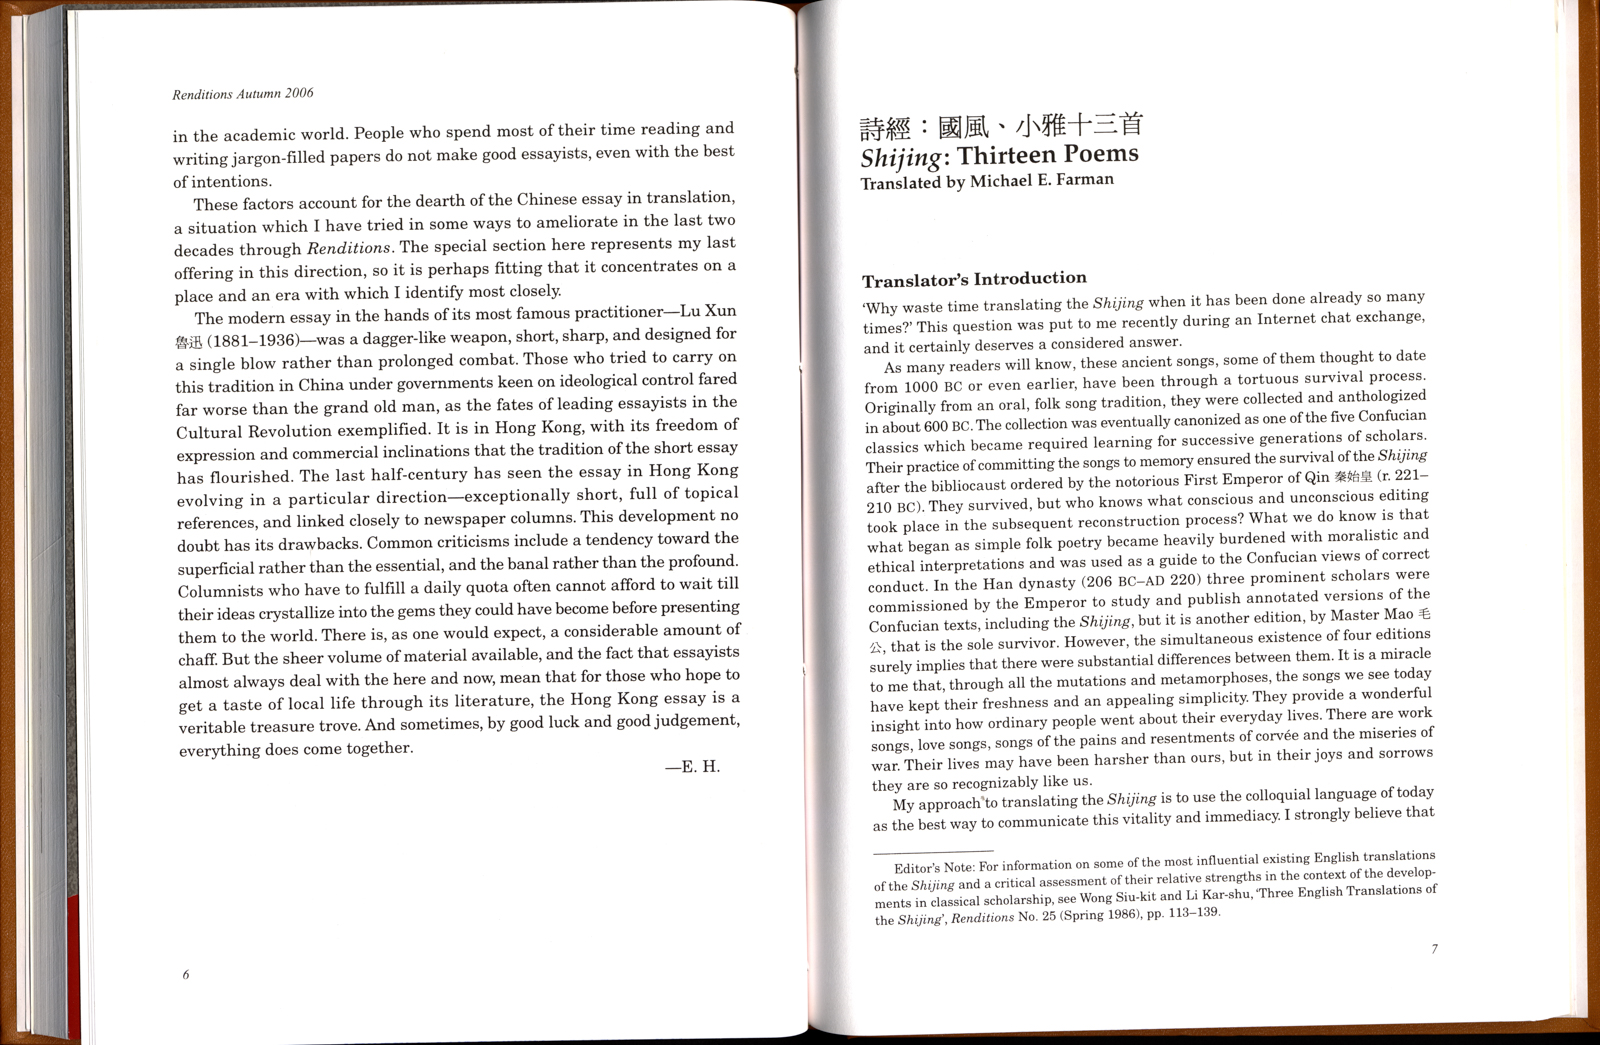 Renditions No. 66 (Autumn 2006) Hong Kong Essays